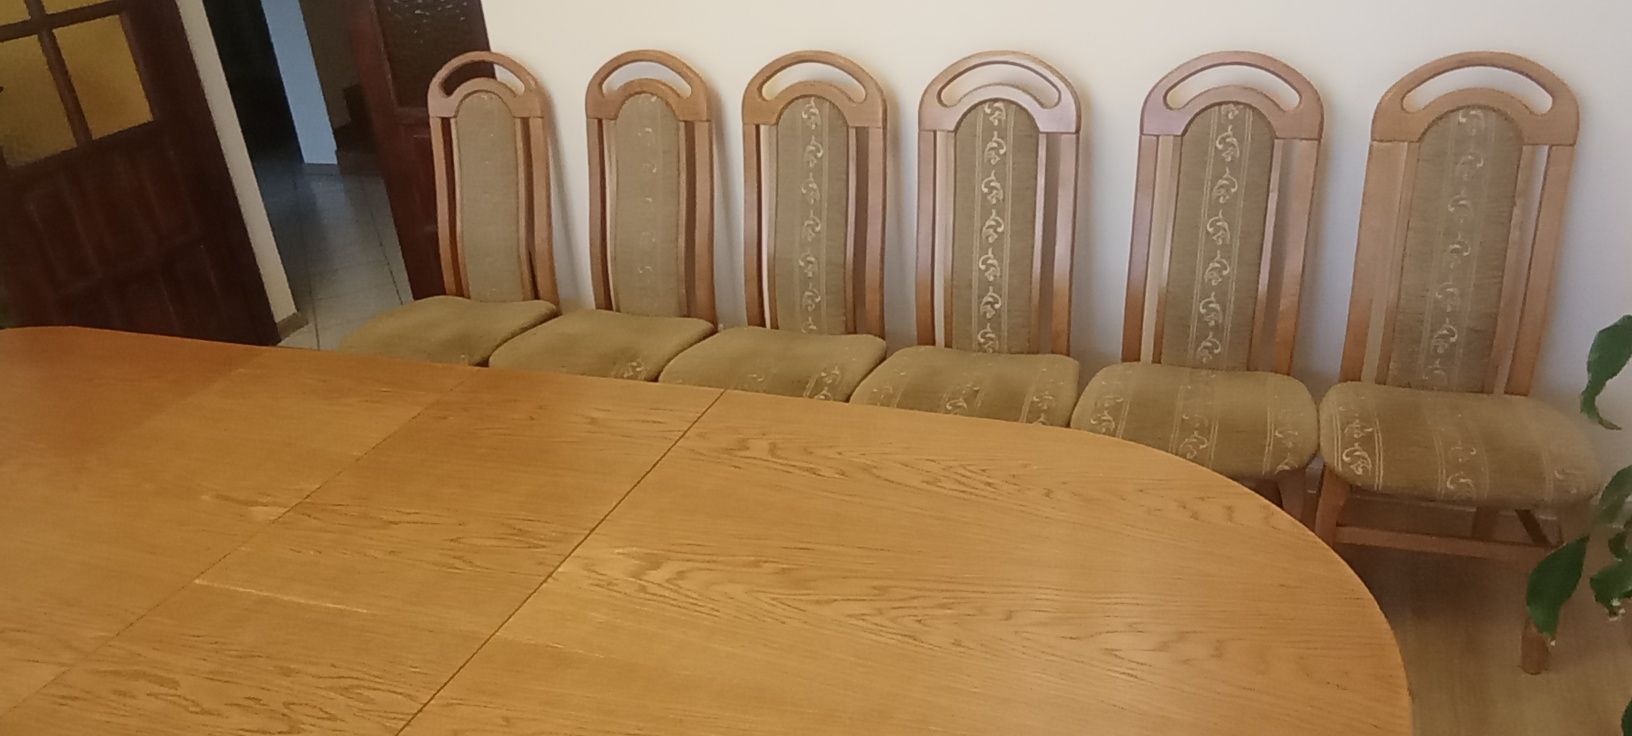 Stół dębowy z 6 krzesłami 3m/2m szer 1m